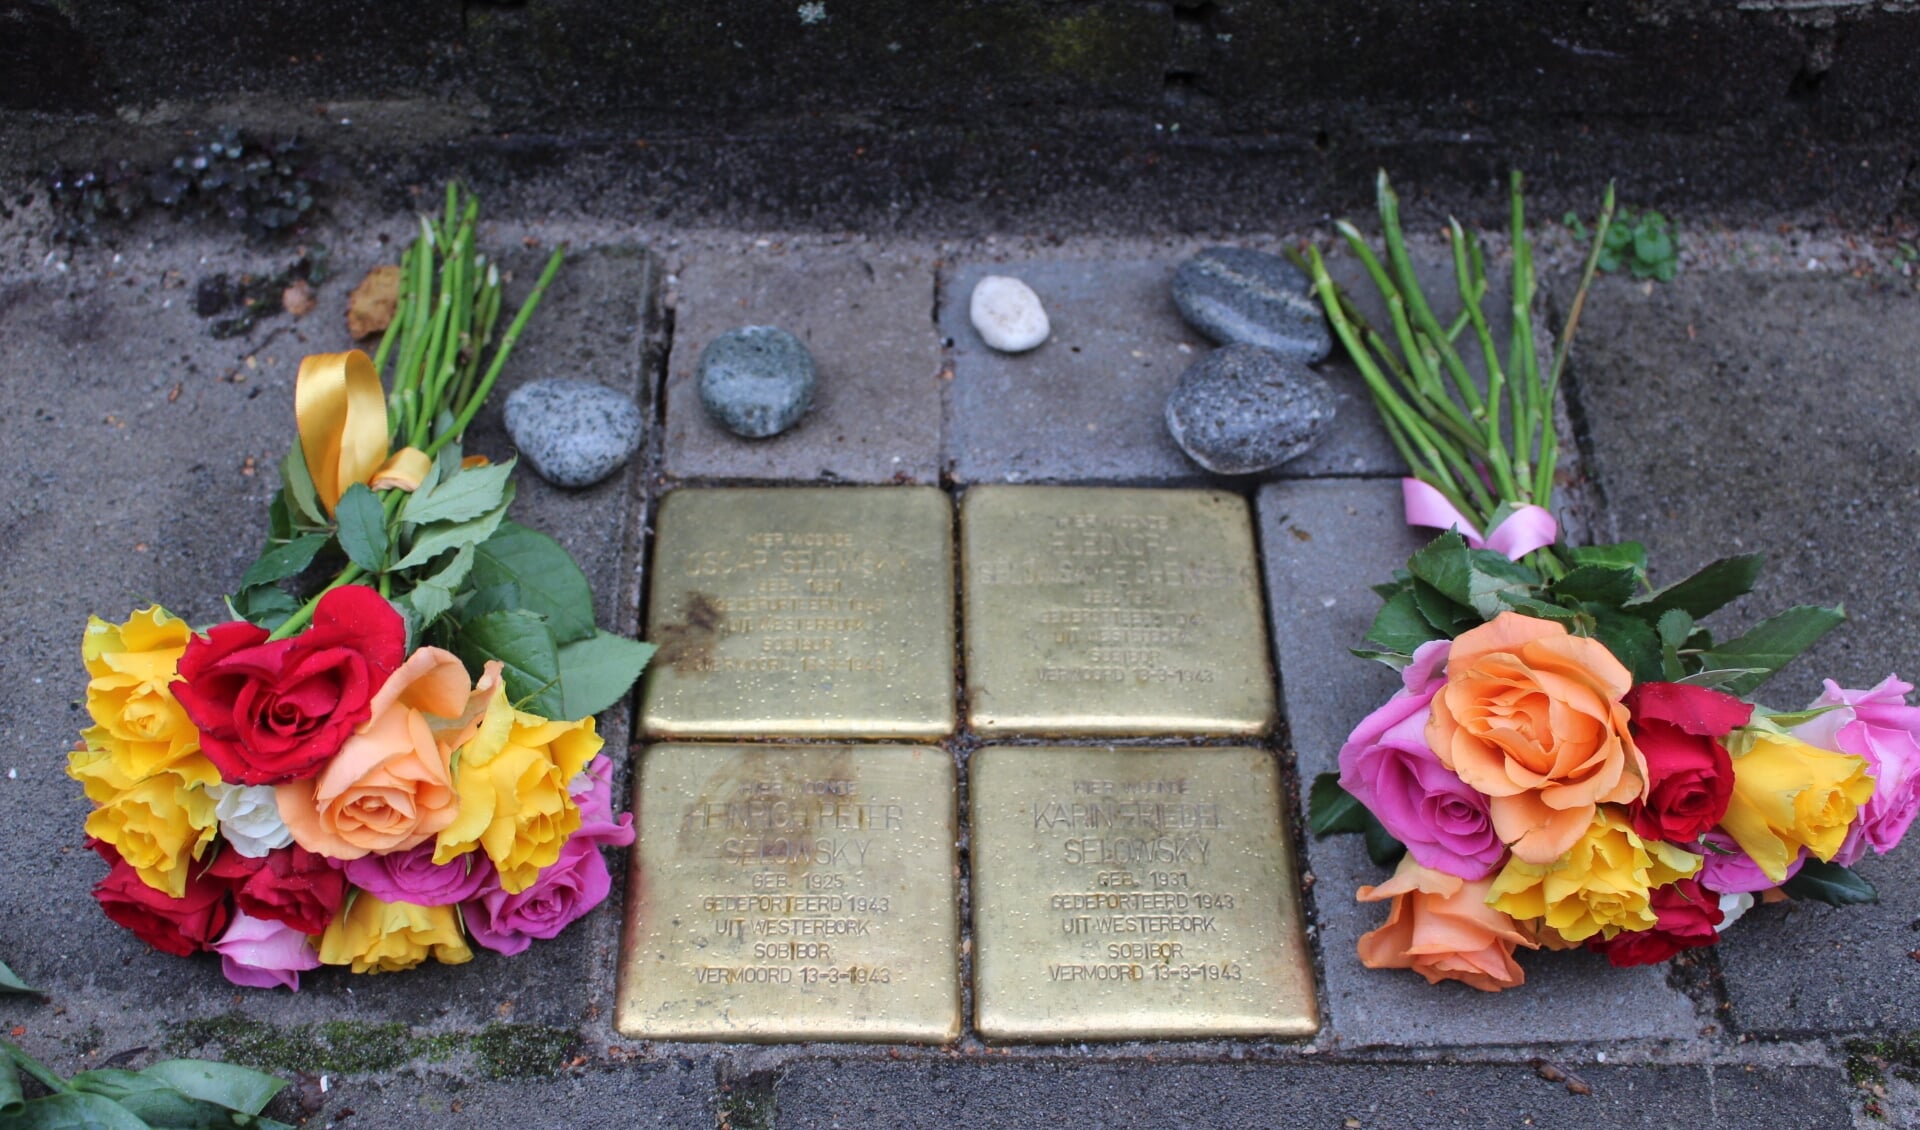 De genodigden legden bloemen en, naar Joods gebruik, steentjes ter herinnering. (Foto: EvE) 